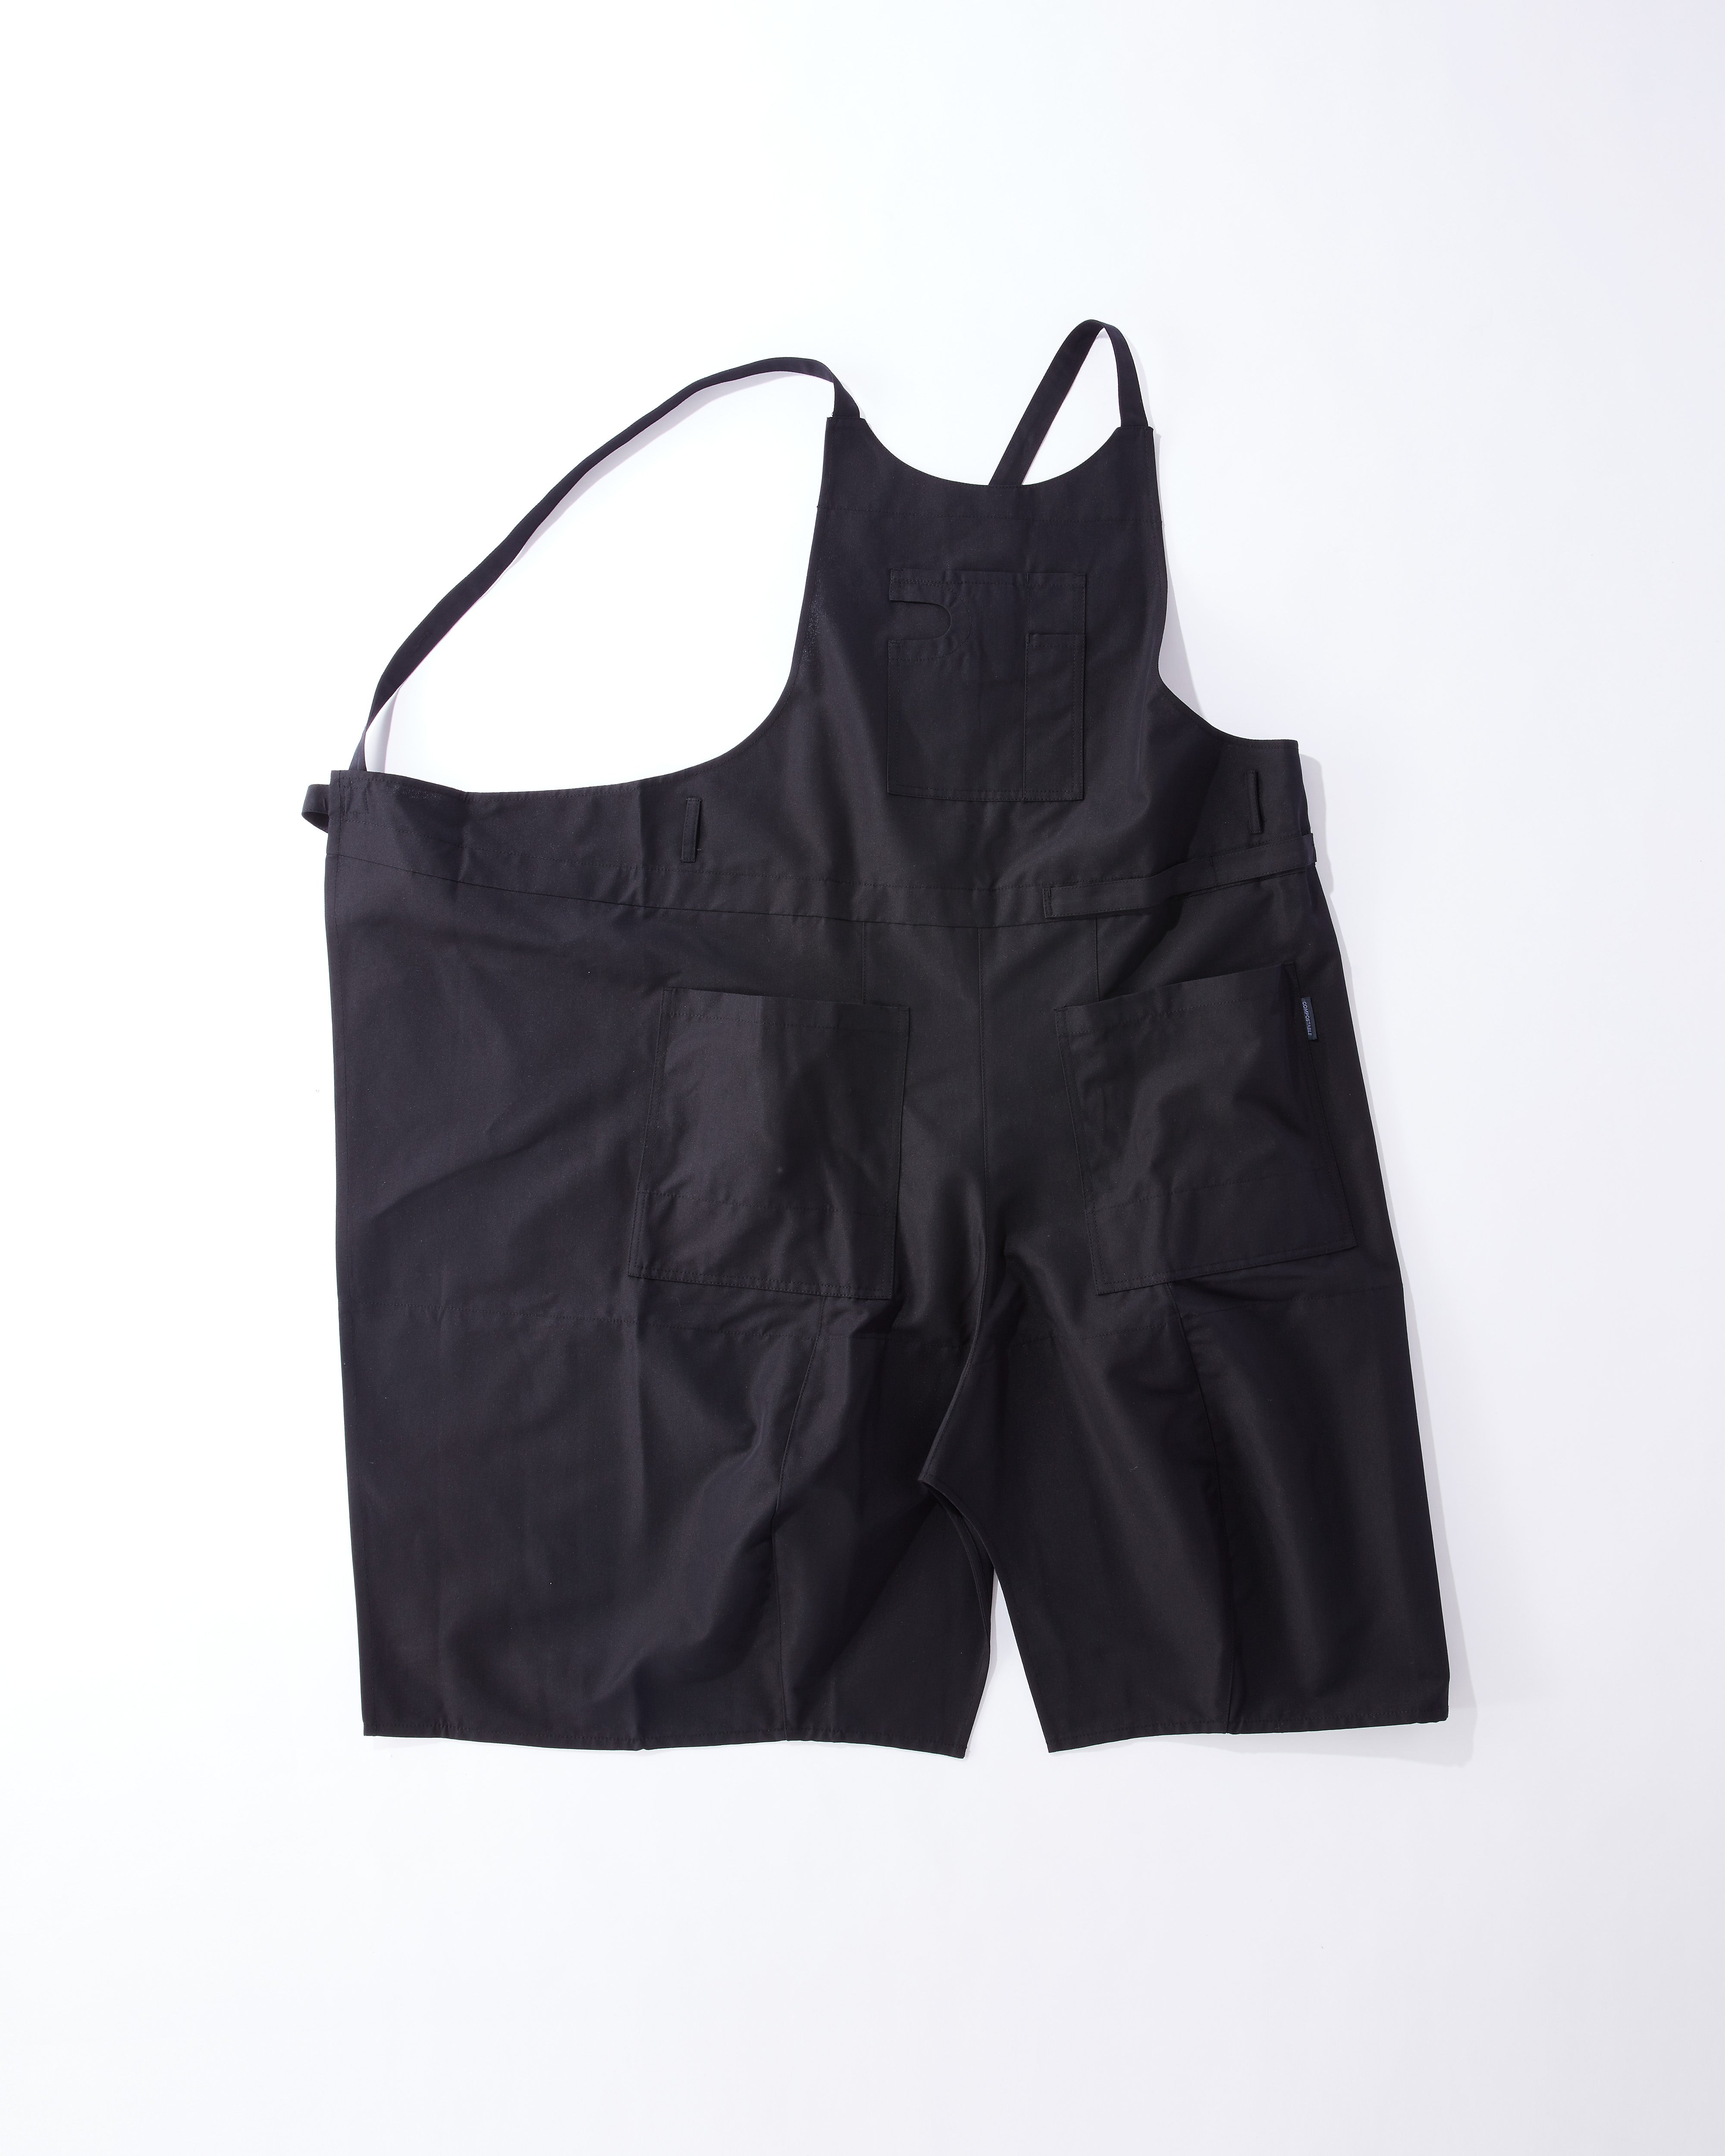 Utility apron Free size / Black